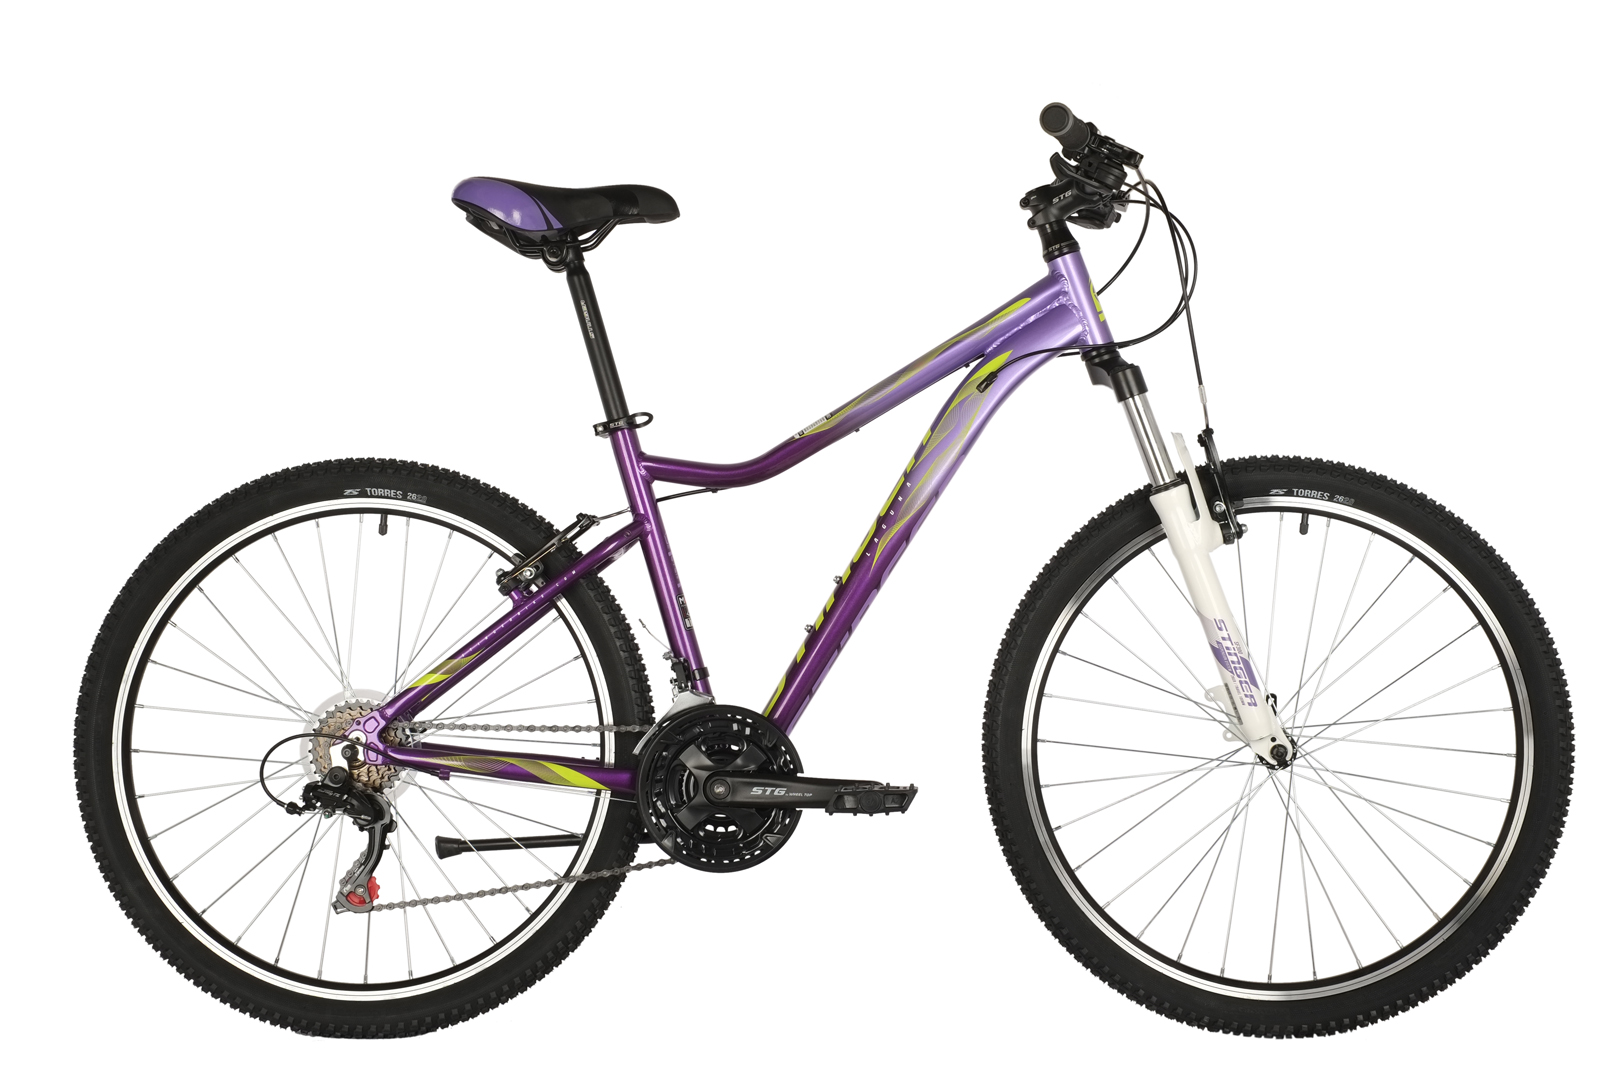  Отзывы о Женском велосипеде Stinger Laguna STD Microshift 26 2021